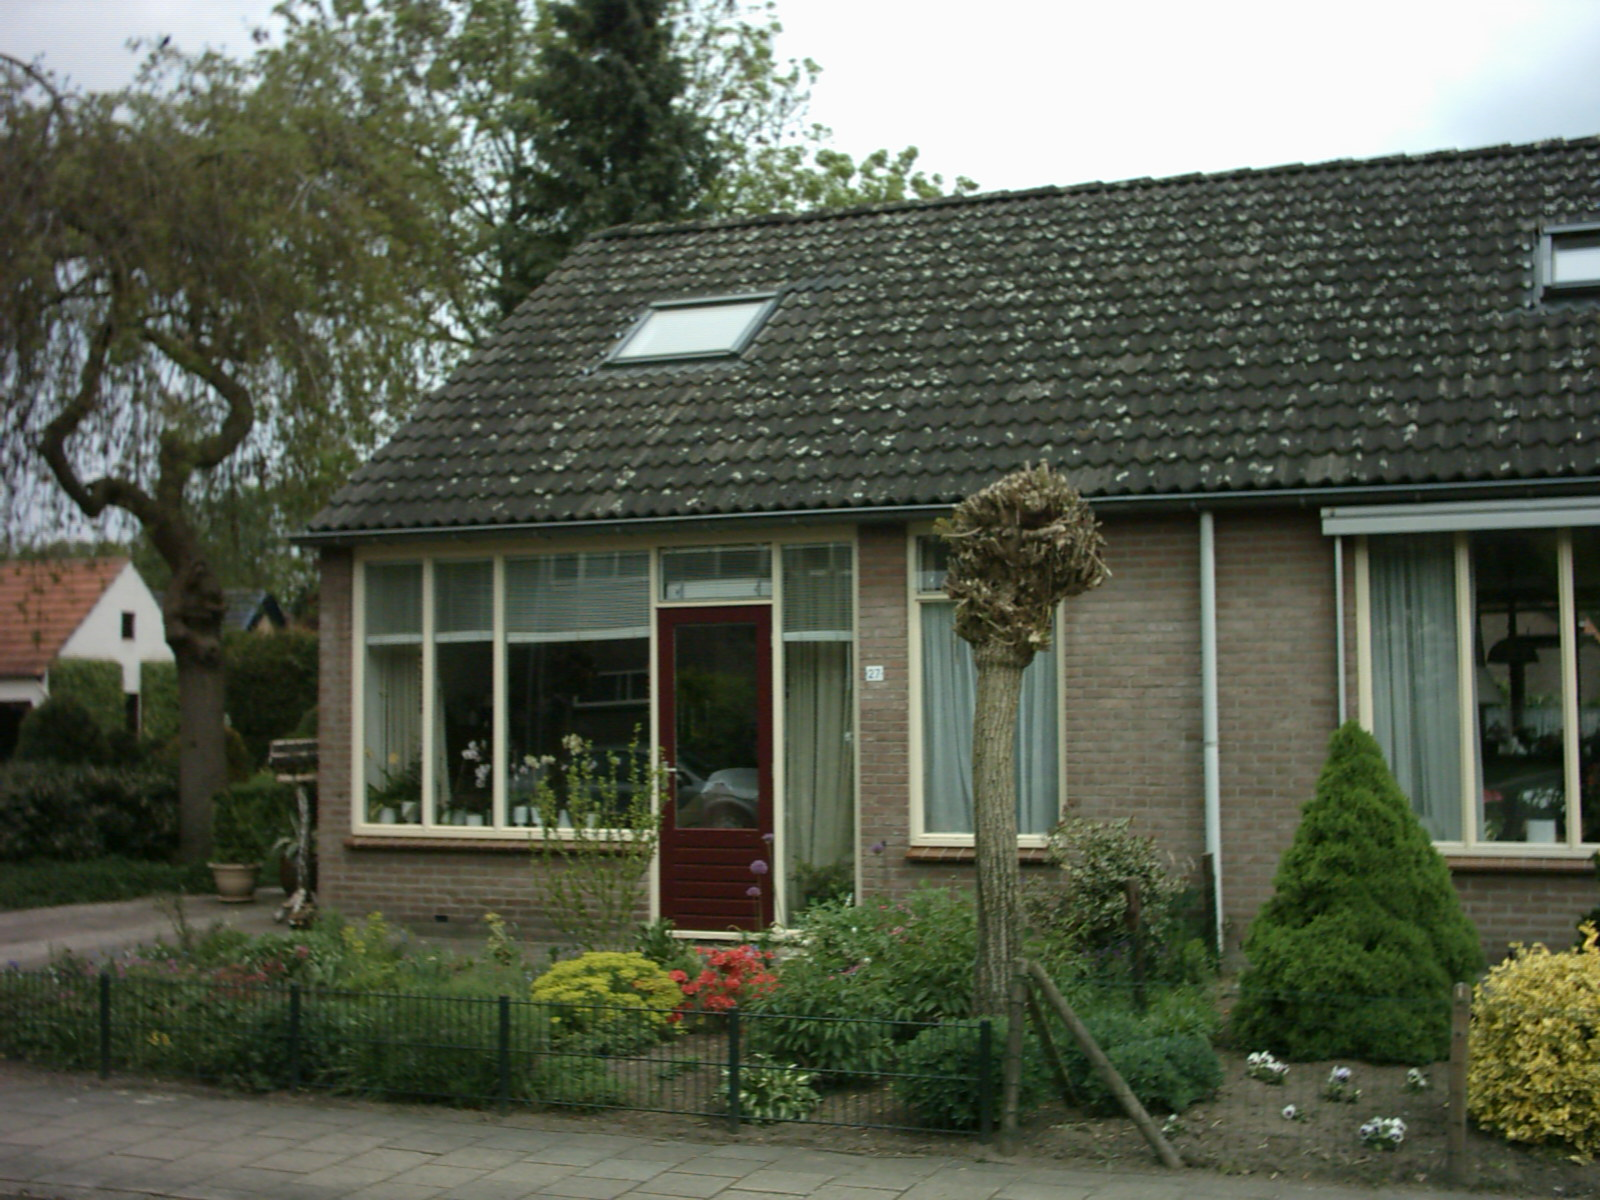 Molenweg 27, 7213 XB Gorssel, Nederland